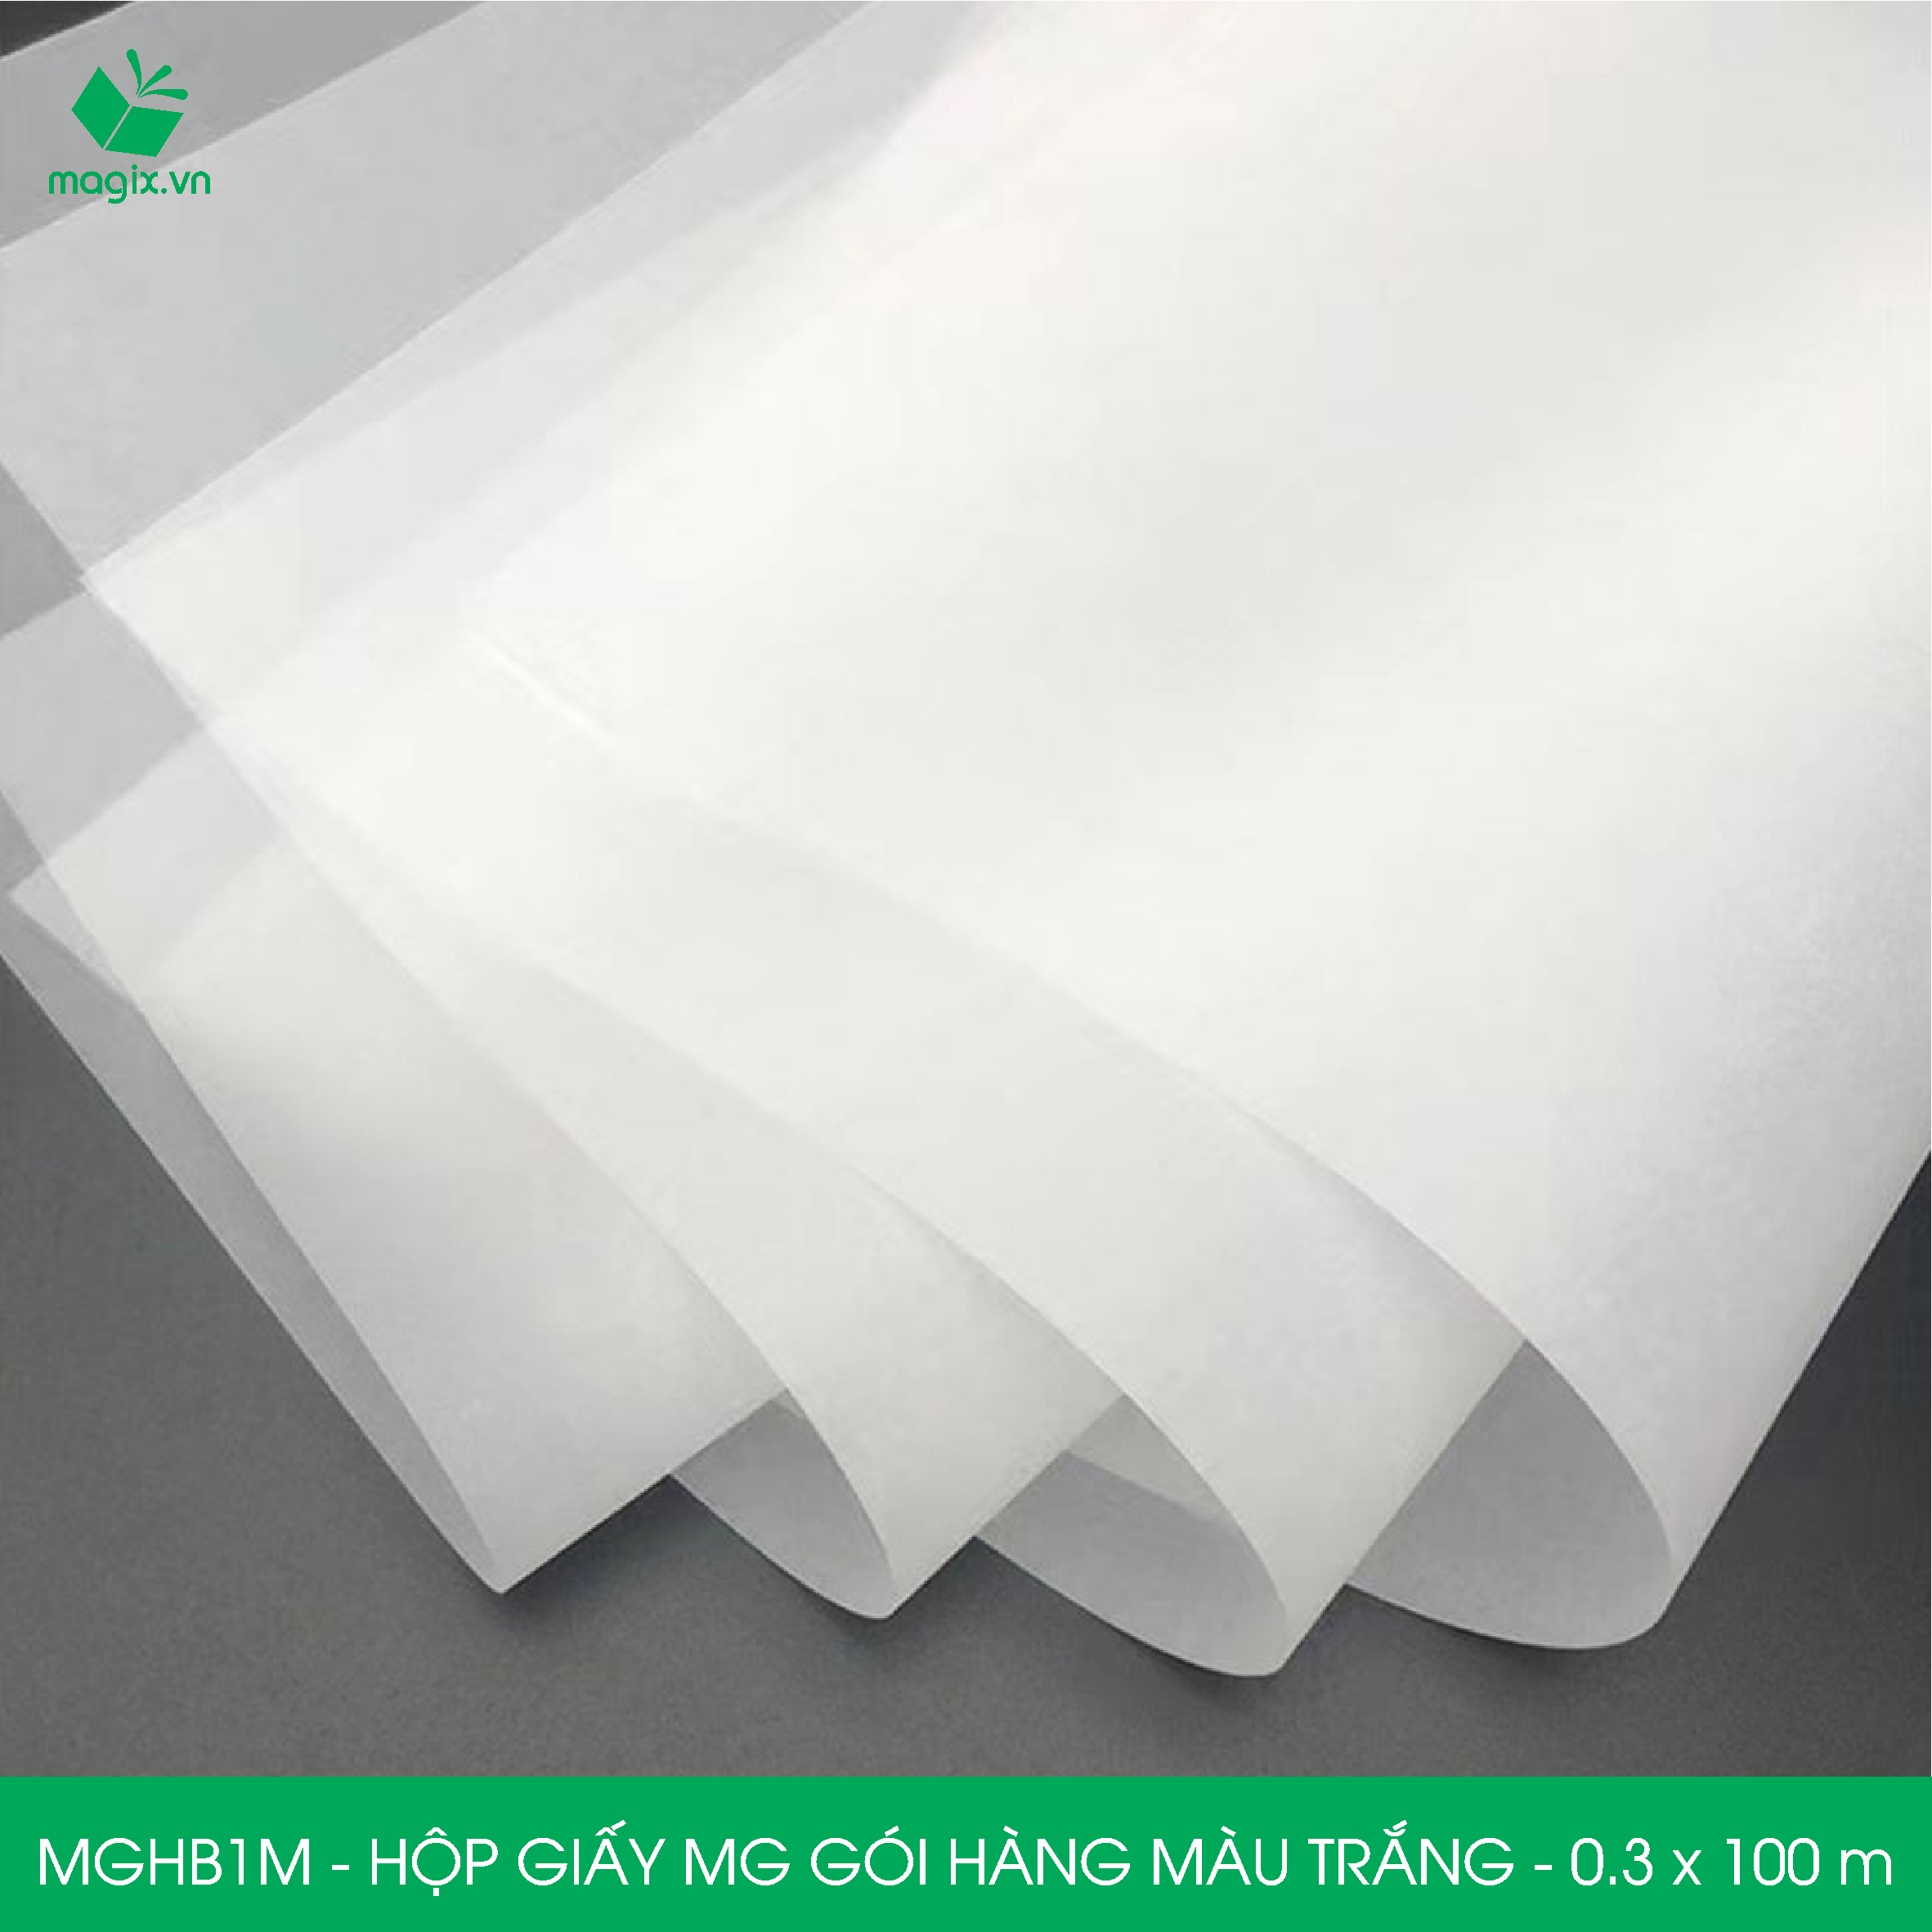 MGHB1M - 0.3x100 m - Hộp cuộn giấy MG, cuộn giấy Pelure trắng gói hàng, cuộn giấy chống ẩm 1 mặt bóng, giấy bọc hàng thời trang